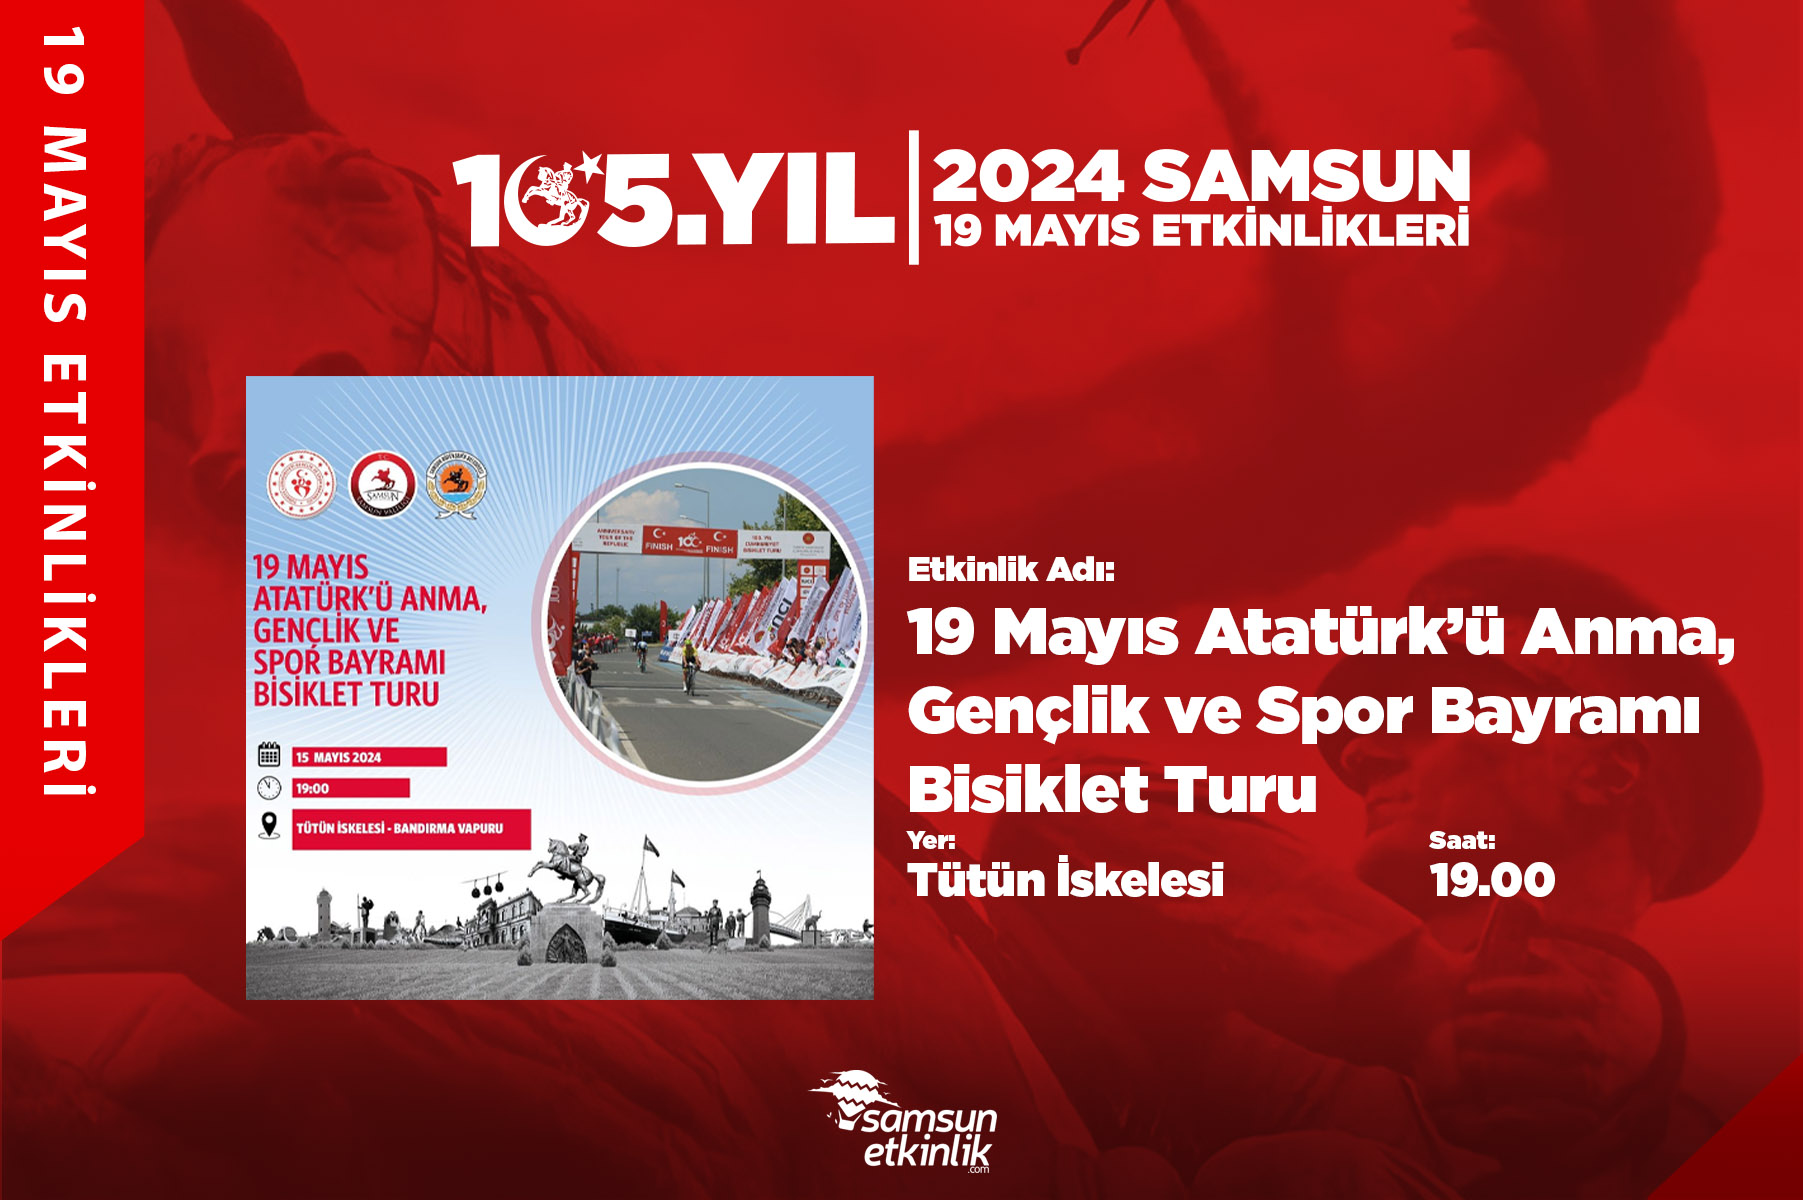 19 Mayıs Atatürk'ü Anma Gençlik ve Spor Bayramı Bisiklet Turu